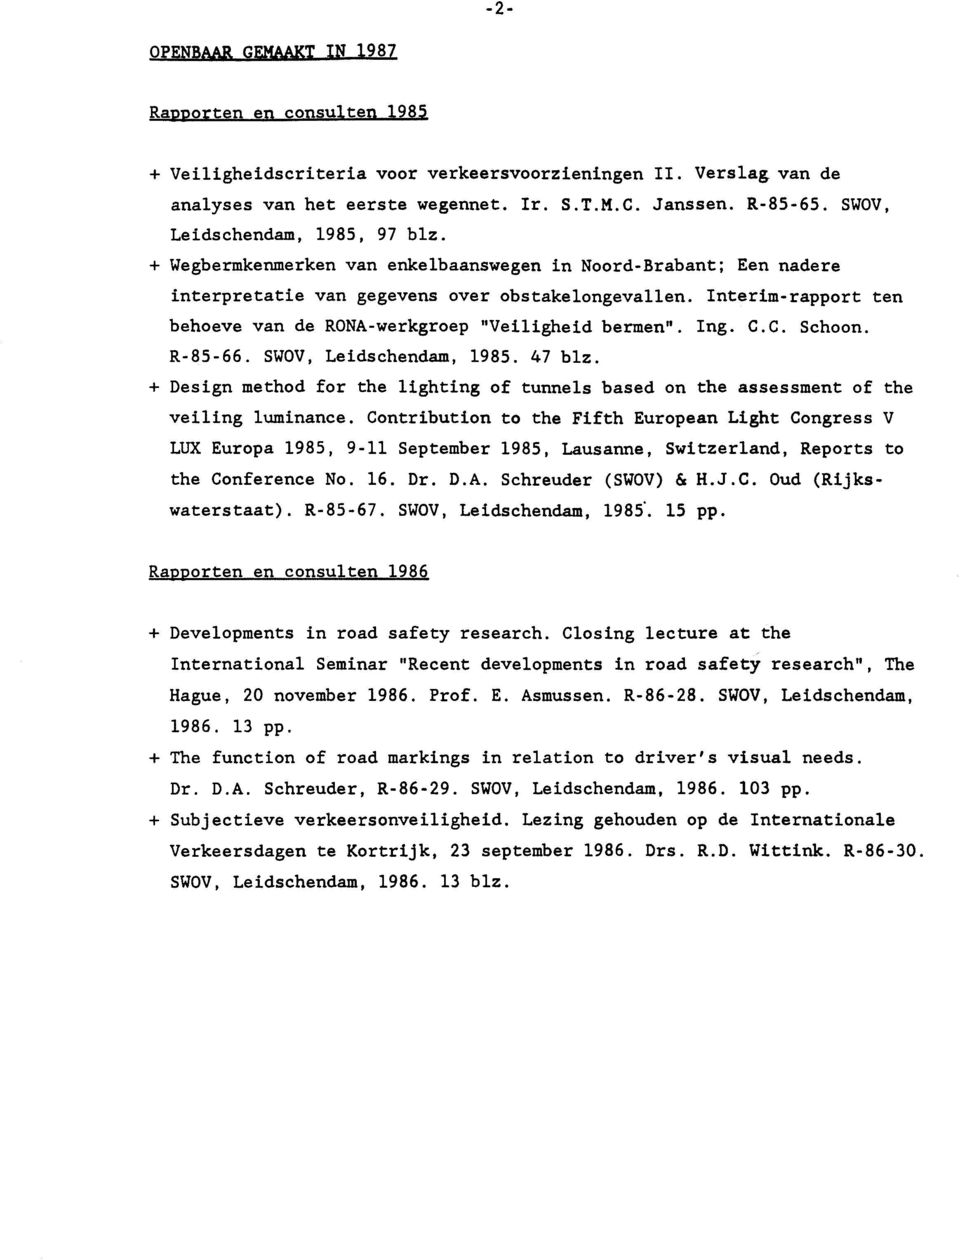 Interim-rapport ten behoeve van de RONA-werkgroep "Veiligheid bermen". Ing. C.C. Schoon. R-85-66. SWOV, Leidschendam, 1985. 47 blz.